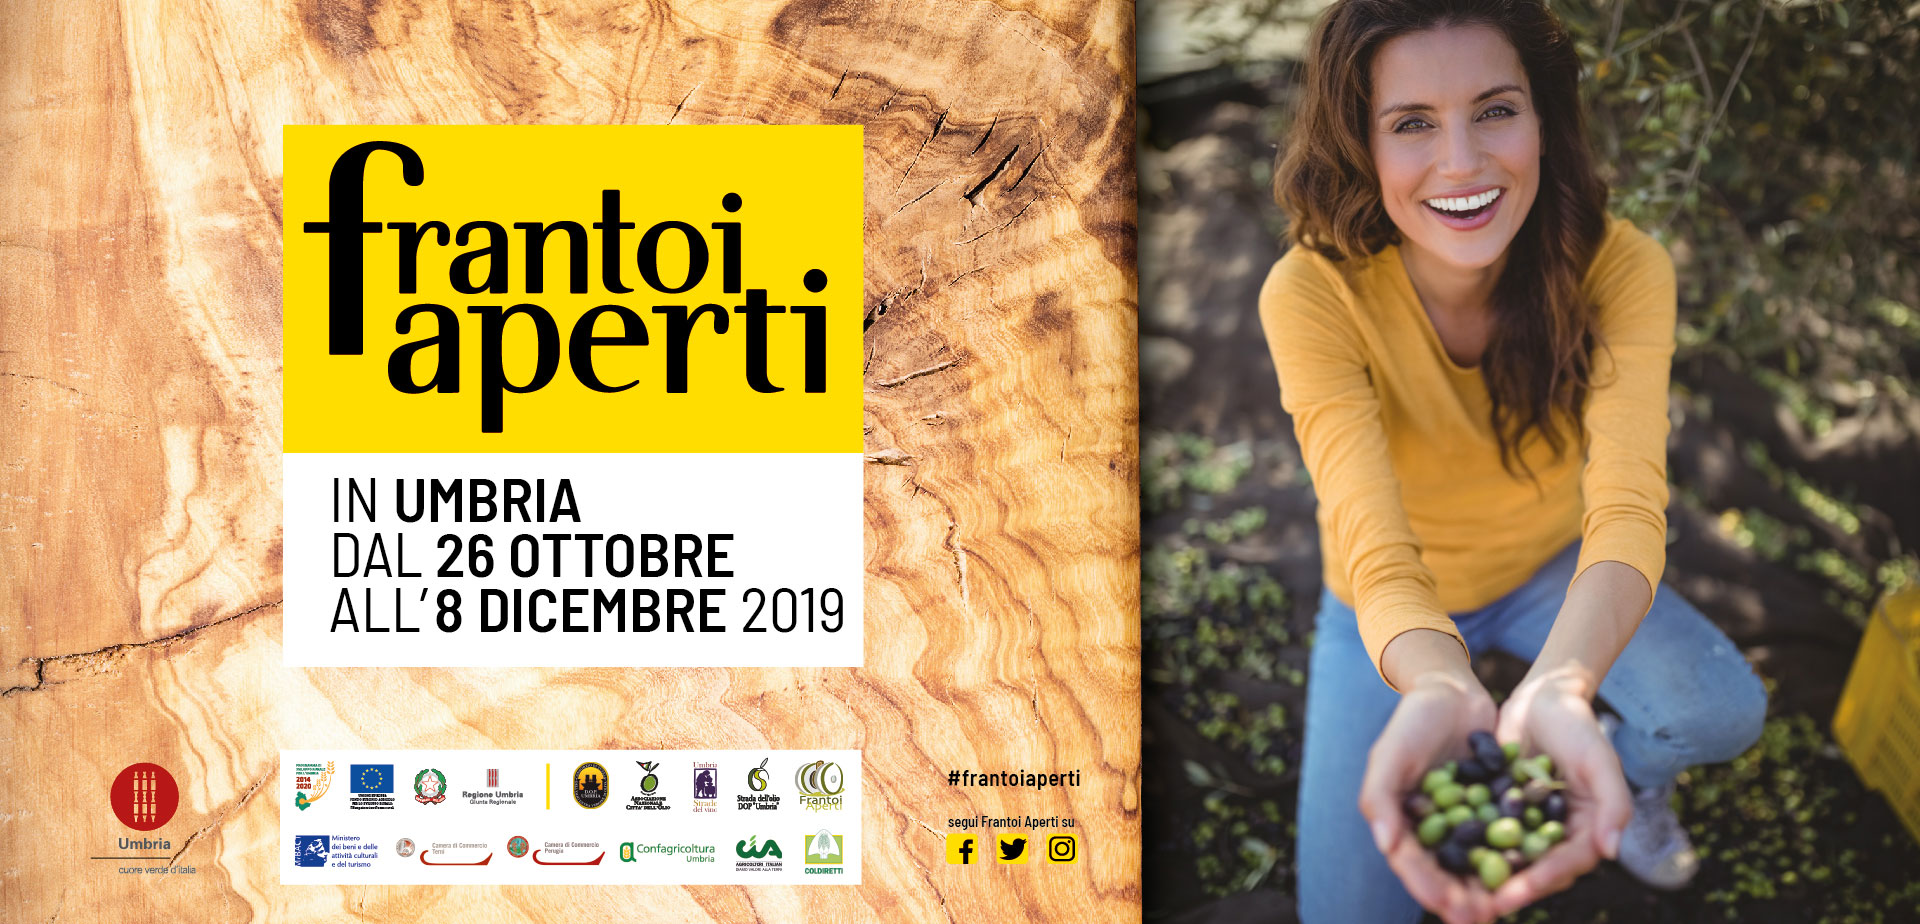 Frantoi Aperti in Umbria dal 26 Ottobre all’8 Dicembre 2019